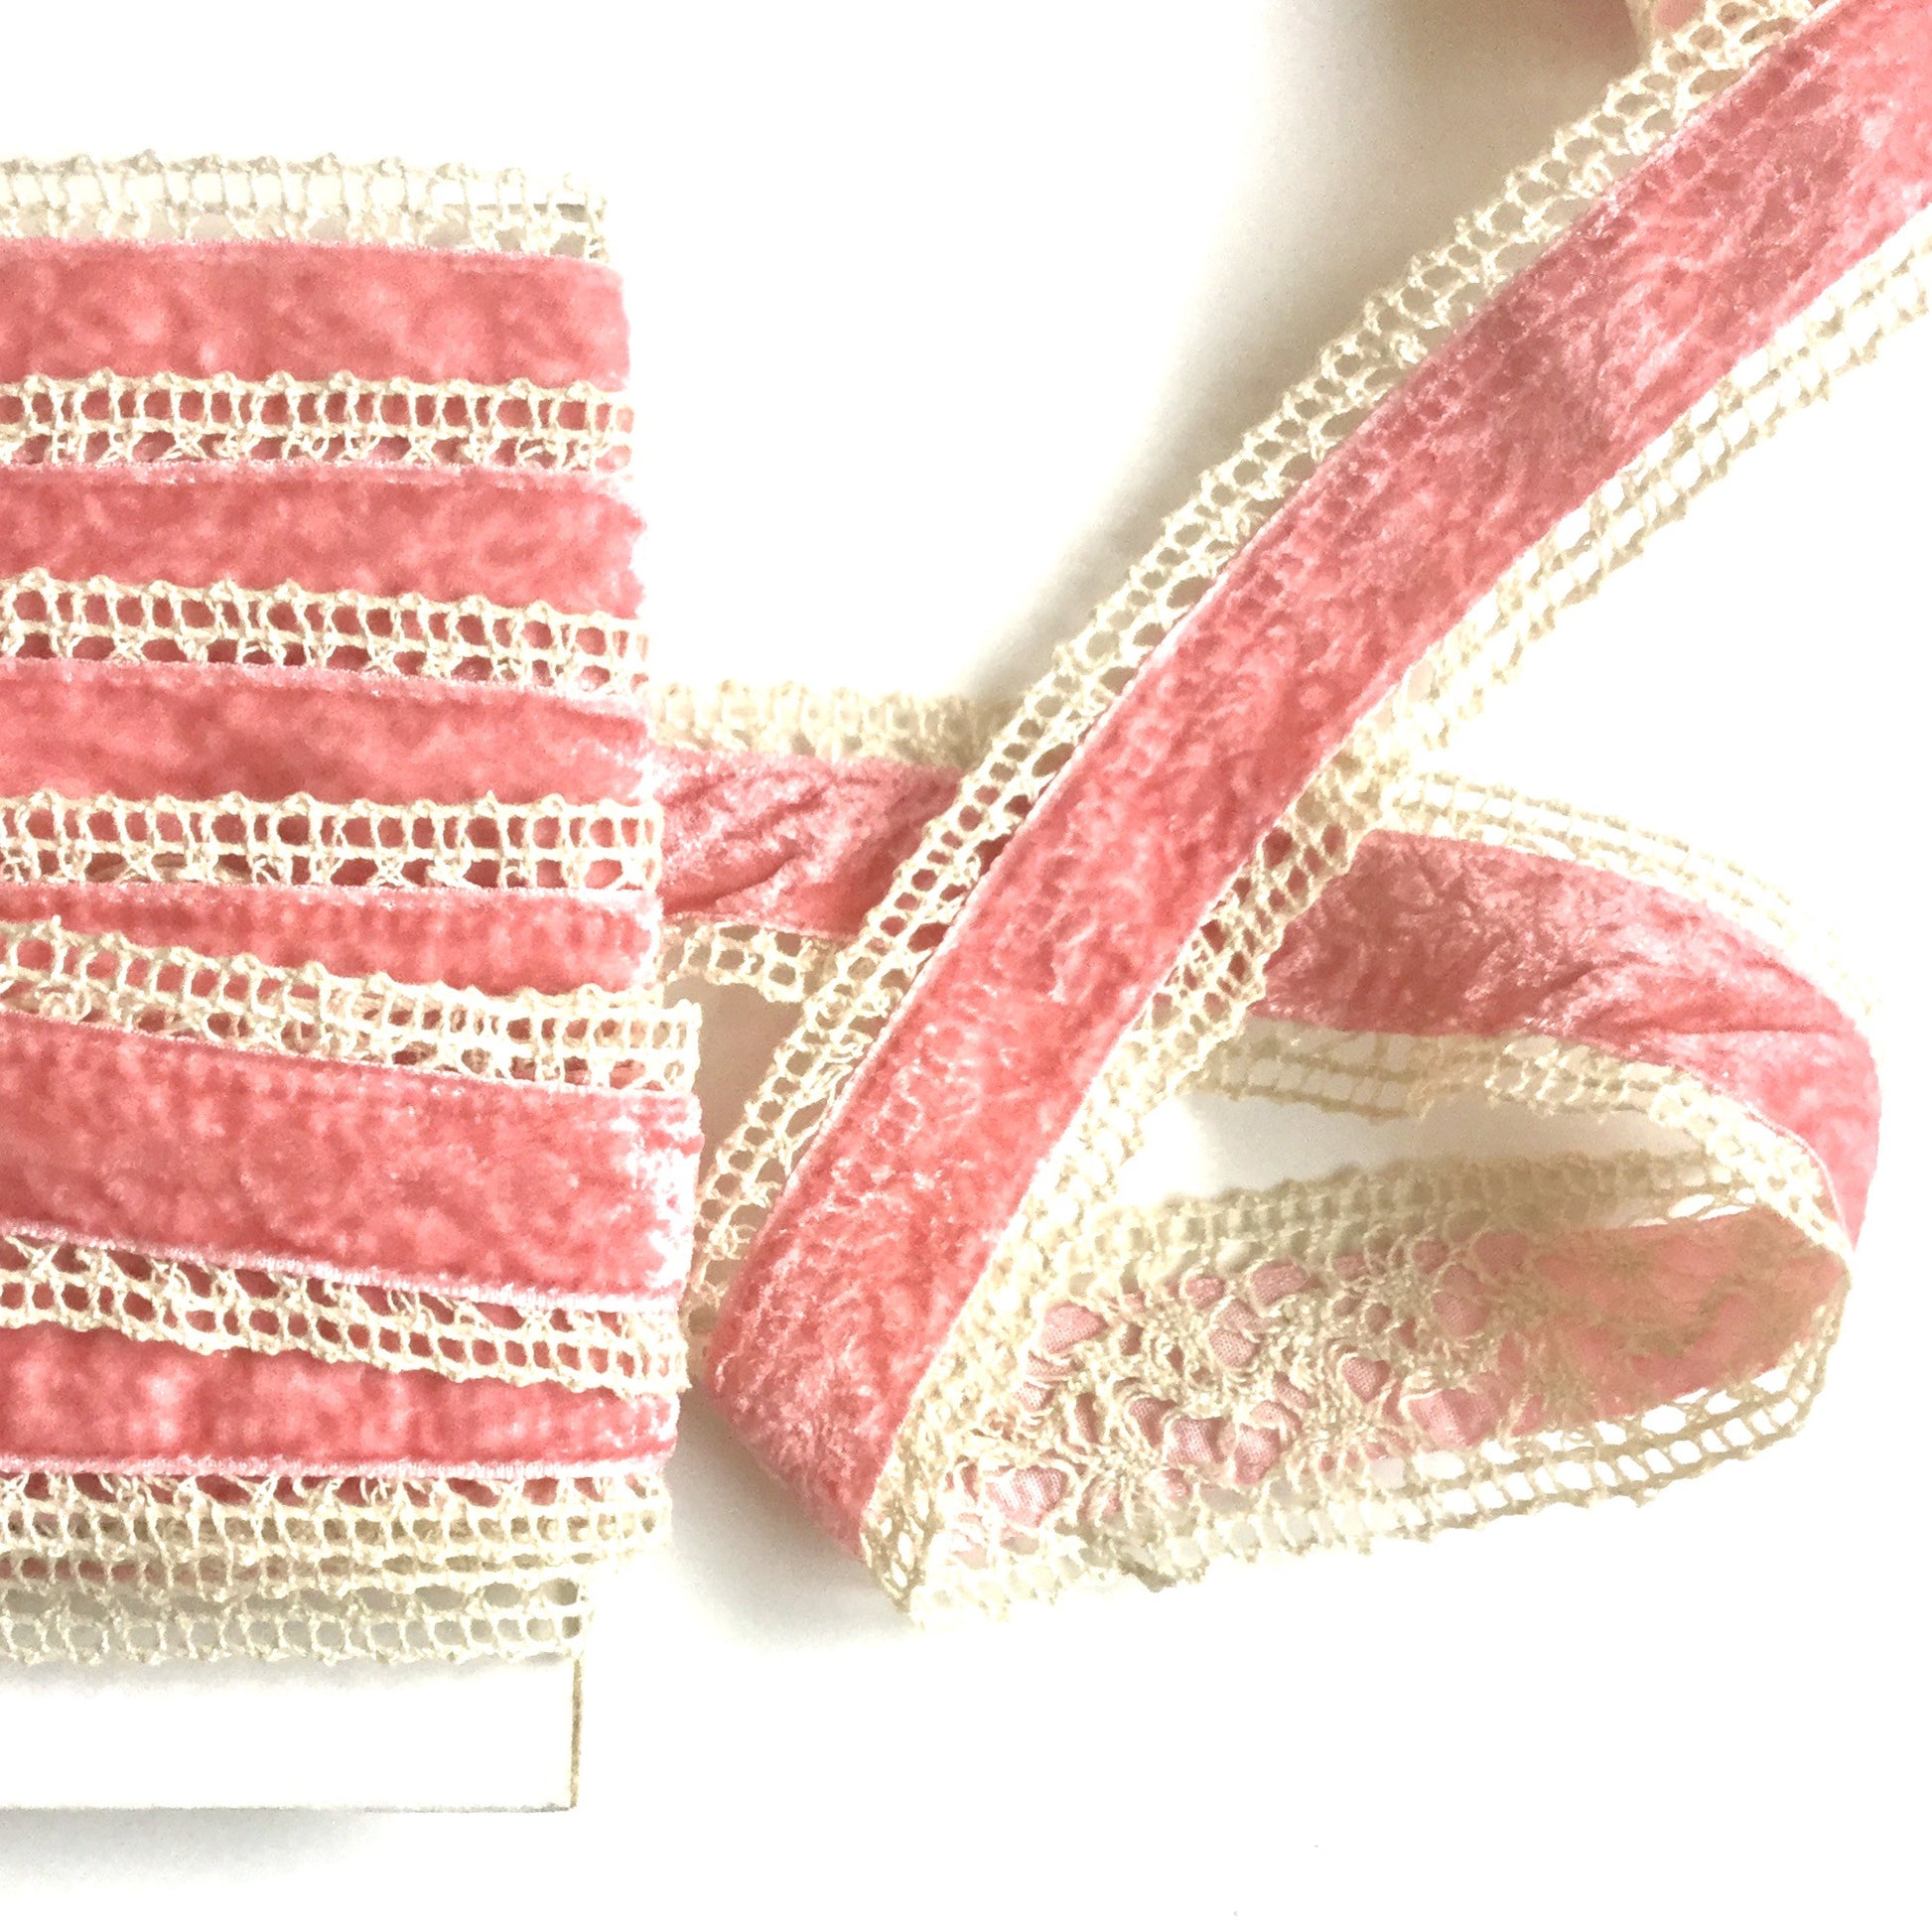 Velvet Center Crochet Ribbon - Rose Pink and Cream - 1 1/2 inch